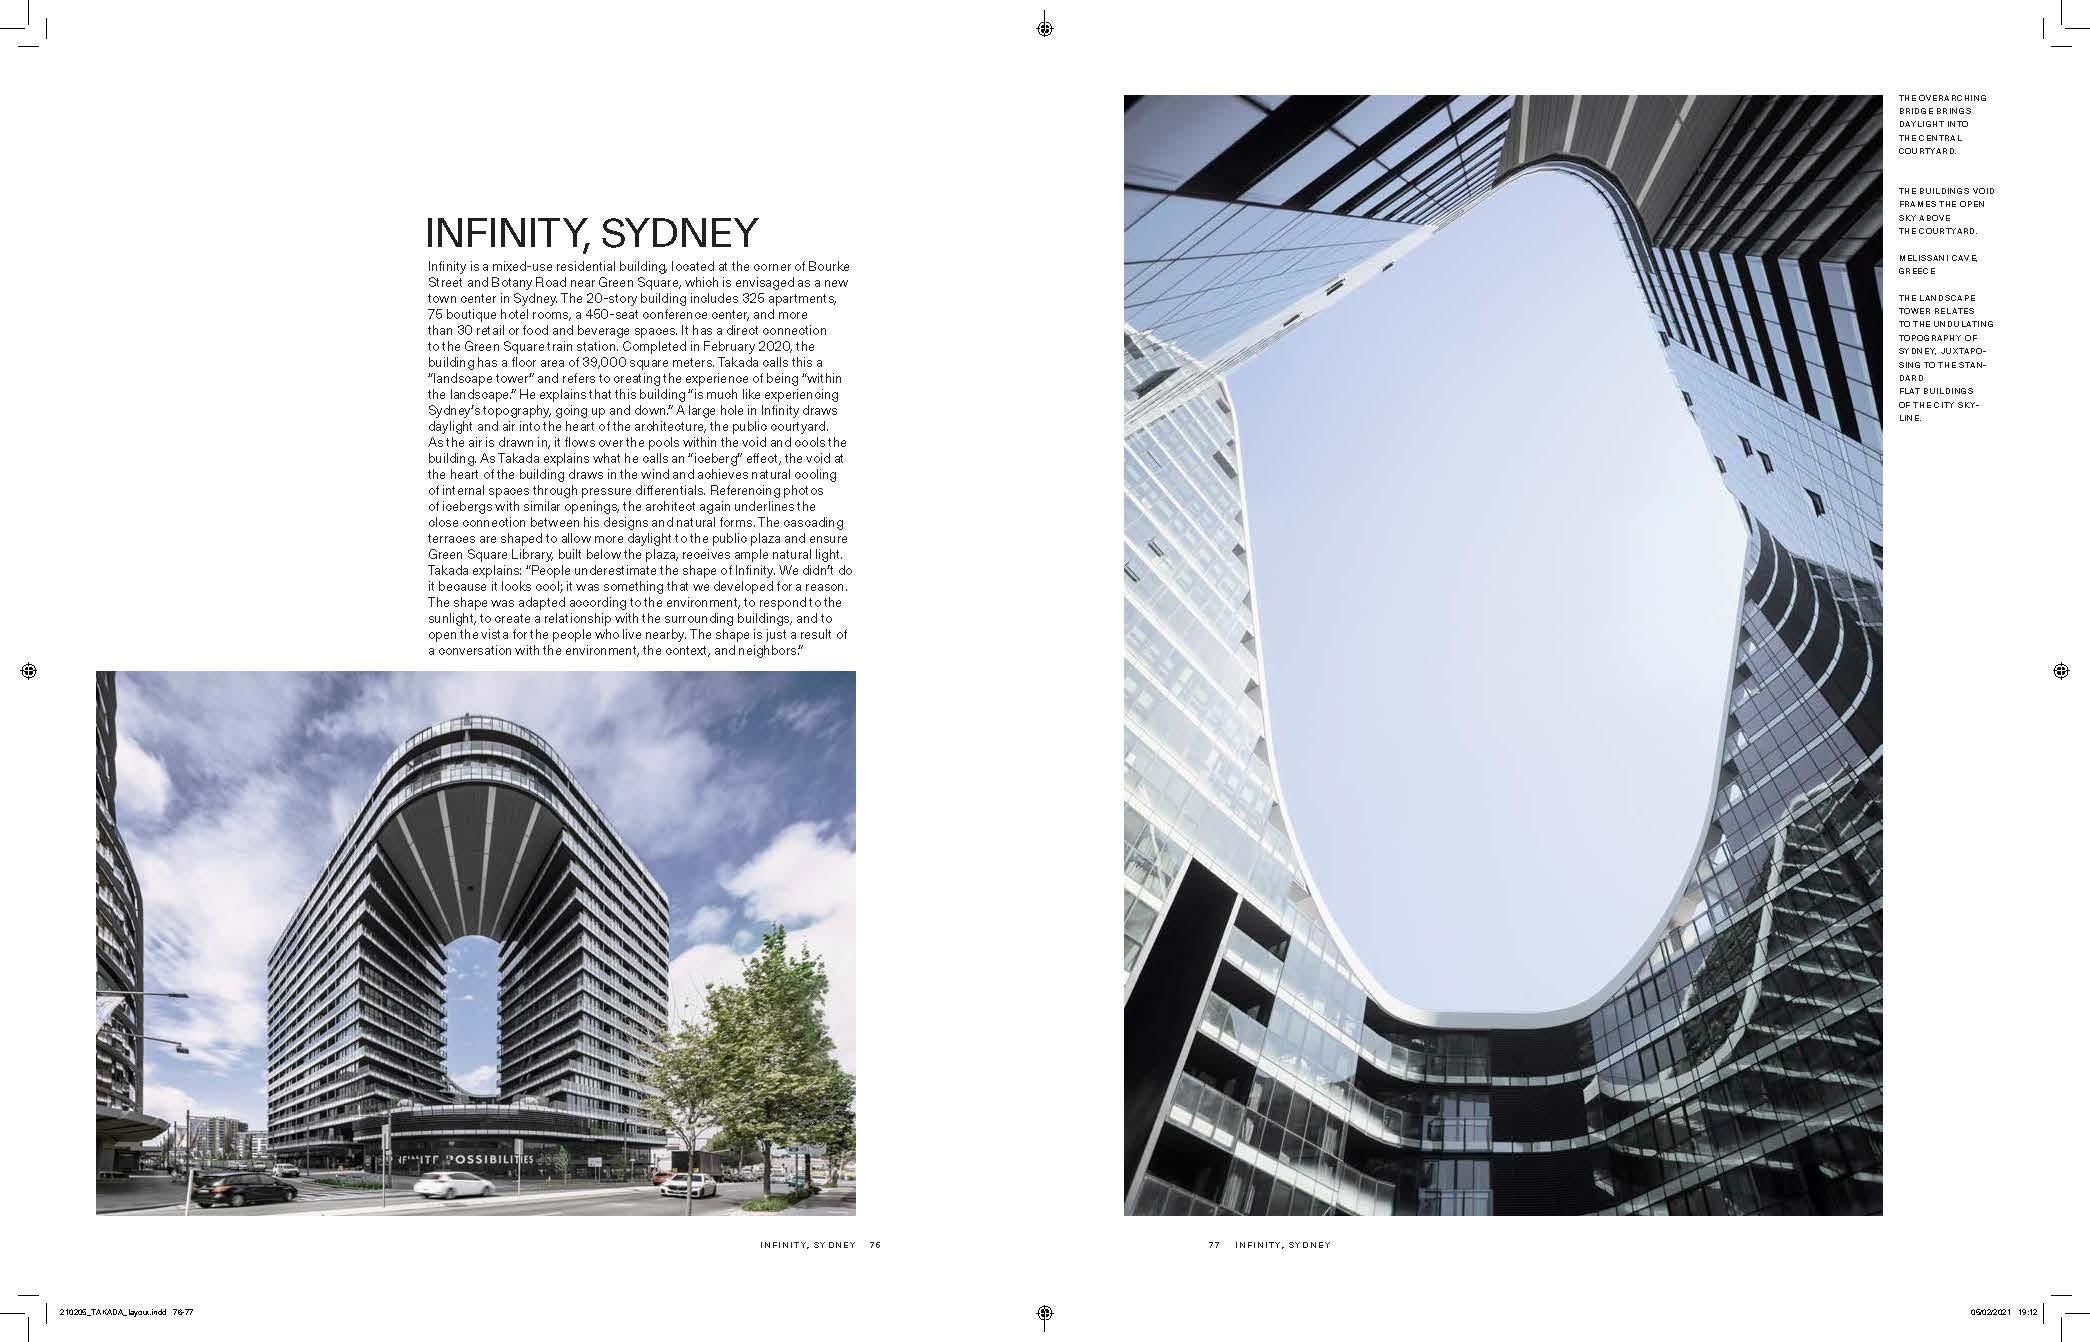 Paper Koichi Takada: Architecture, Nature, and Design For Sale